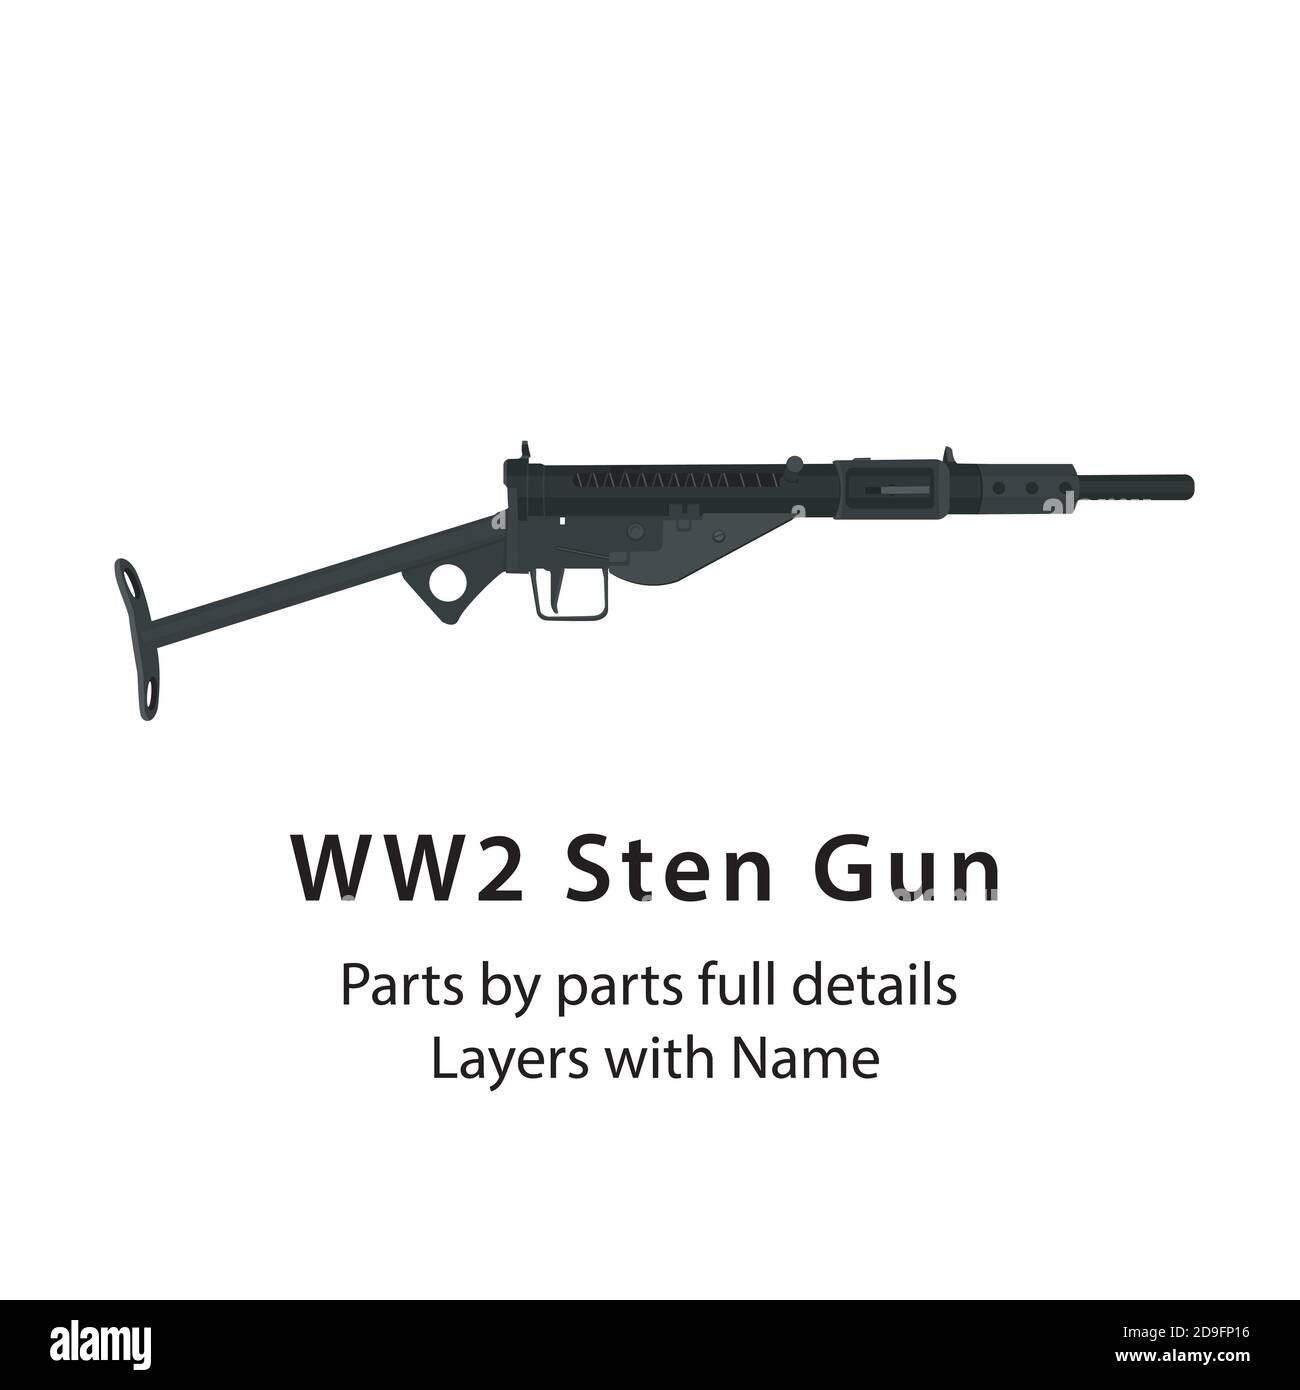 Stengun. Britische Maschinengewehr im Zweiten Weltkrieg. WW2 Pistolen - Teile nach Teilen mit Layer-Namen, am besten für Animationen wie Brennen, Stock Vektor